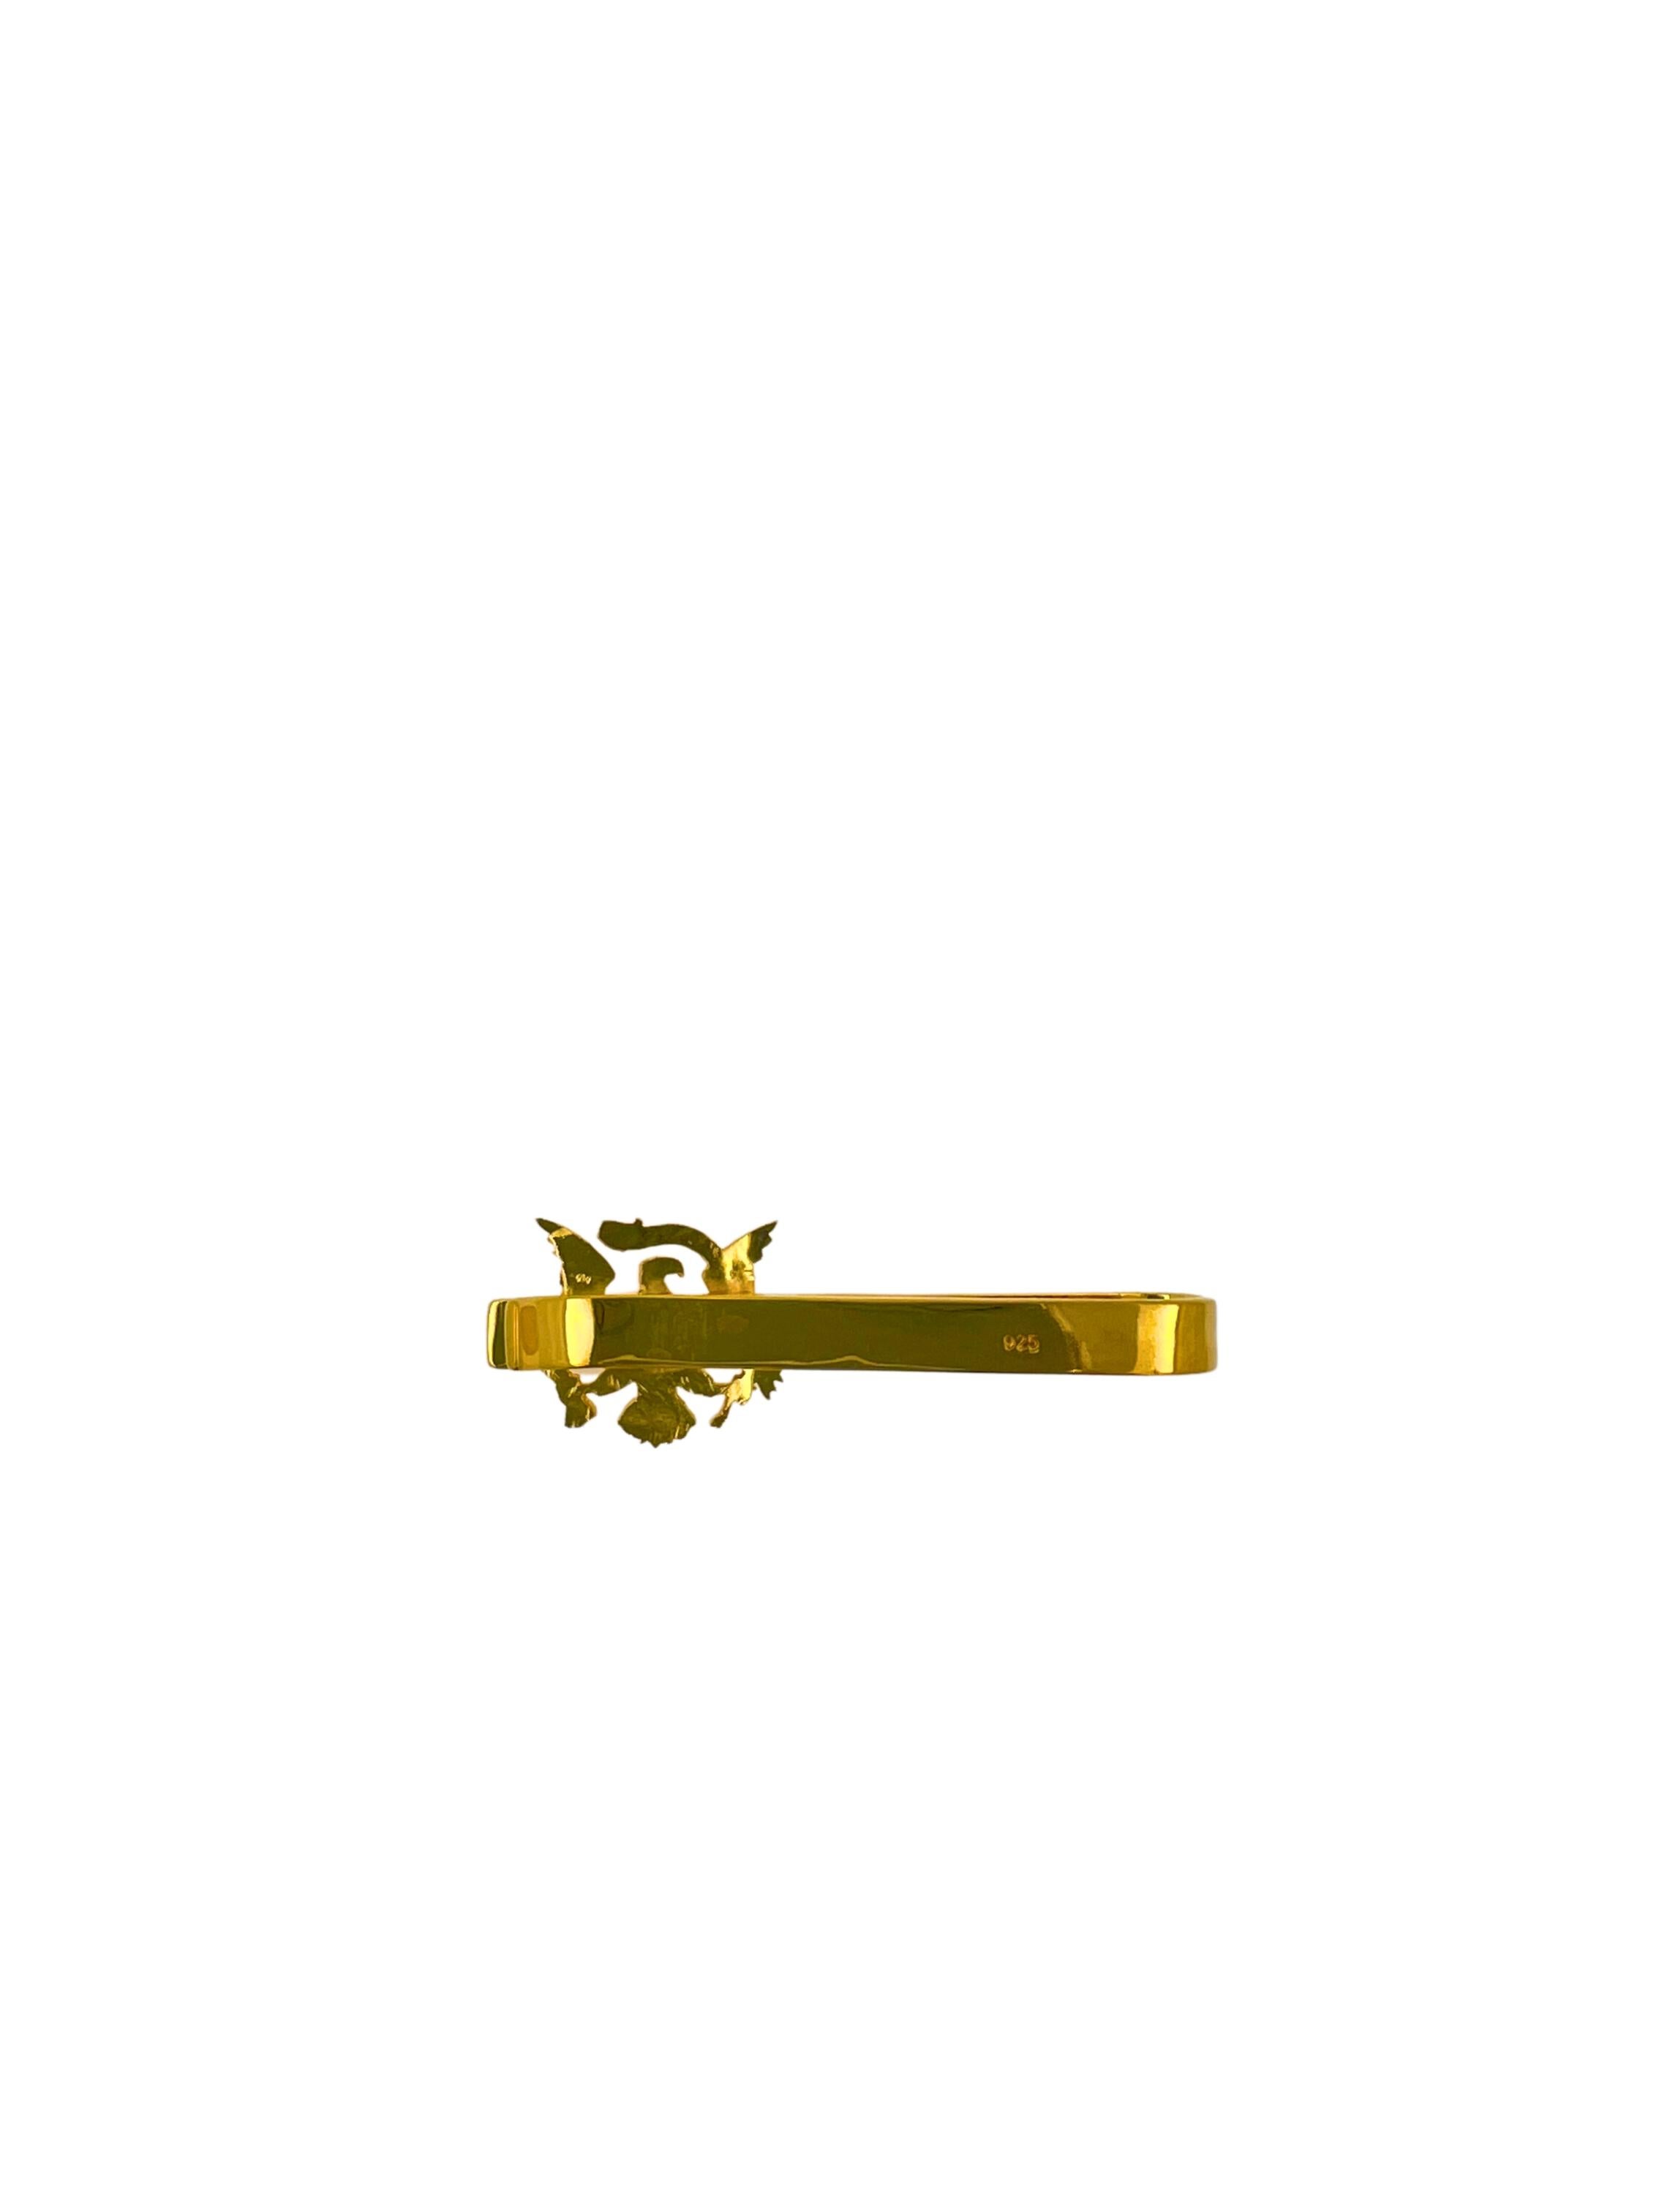 Vermeil en or jaune 18K et argent sterling massif 925
Véritable pièce de monnaie vintage 
Aigle sculpté dans une pièce de monnaie
Très bon rapport qualité/prix